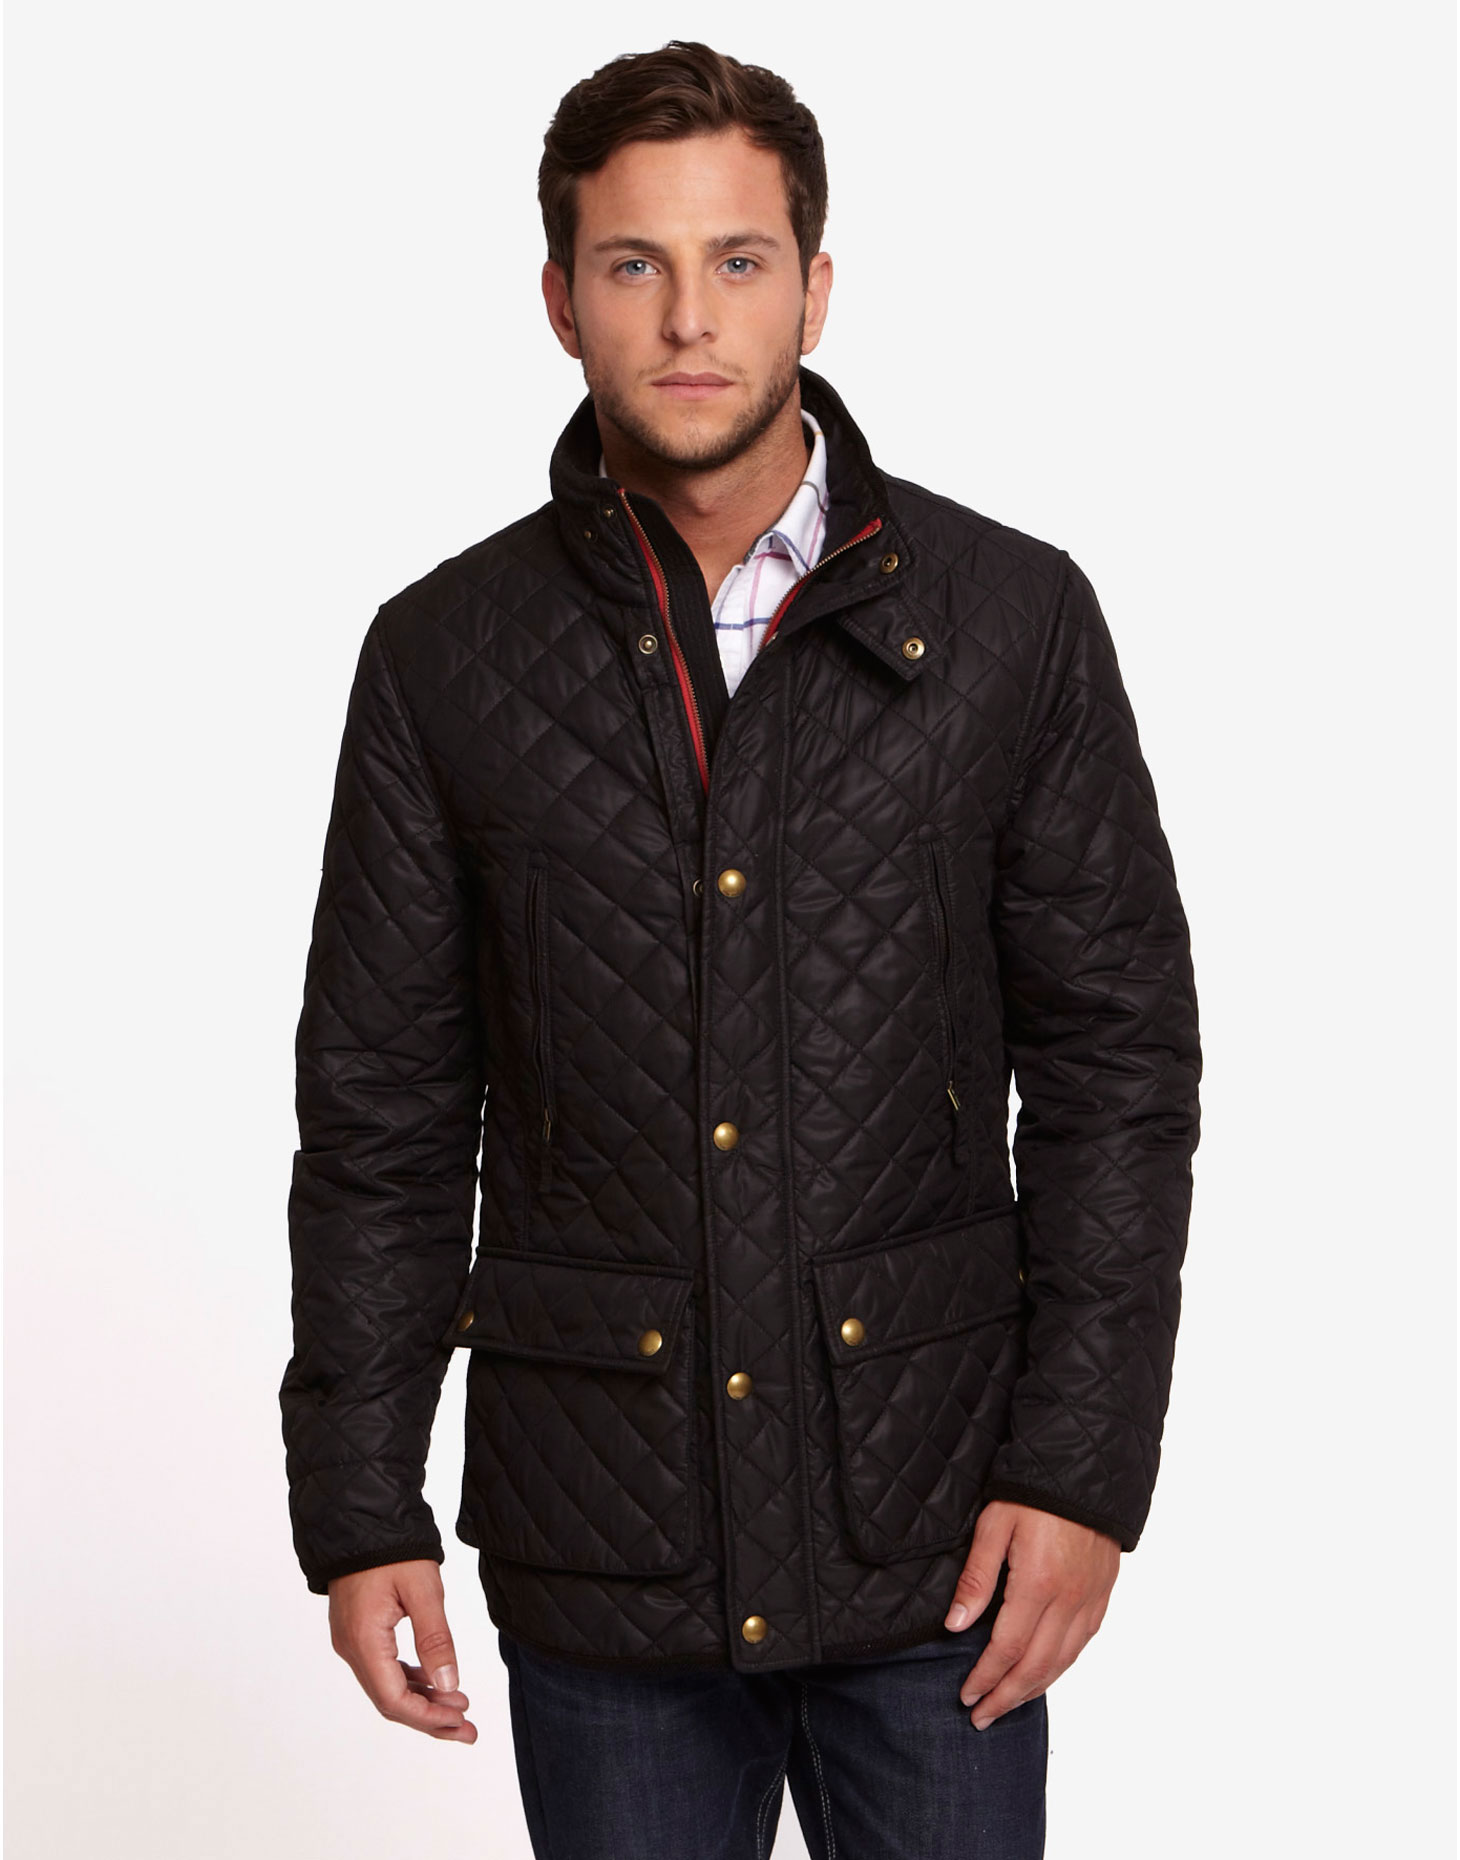 Как выбрать мужскую куртку зимнюю: Как выбрать мужскую зимнюю куртку